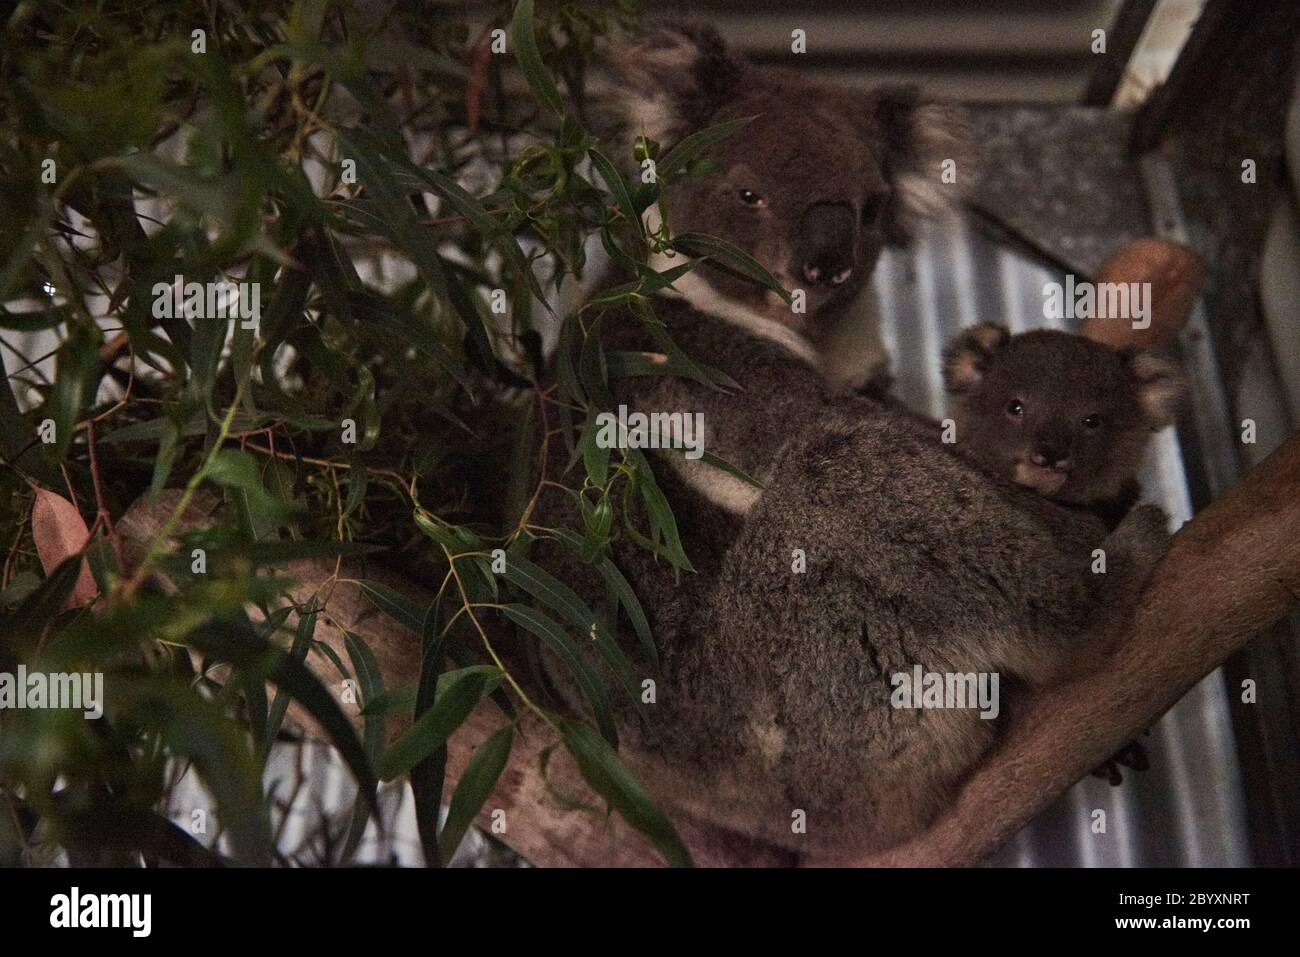 Susan Puris, animalière et fondatrice du refuge pour la faune et le koala de l'île Raymond, sur l'île Raymond, Victoria, Australie, le lundi 6 janvier 2020 Banque D'Images